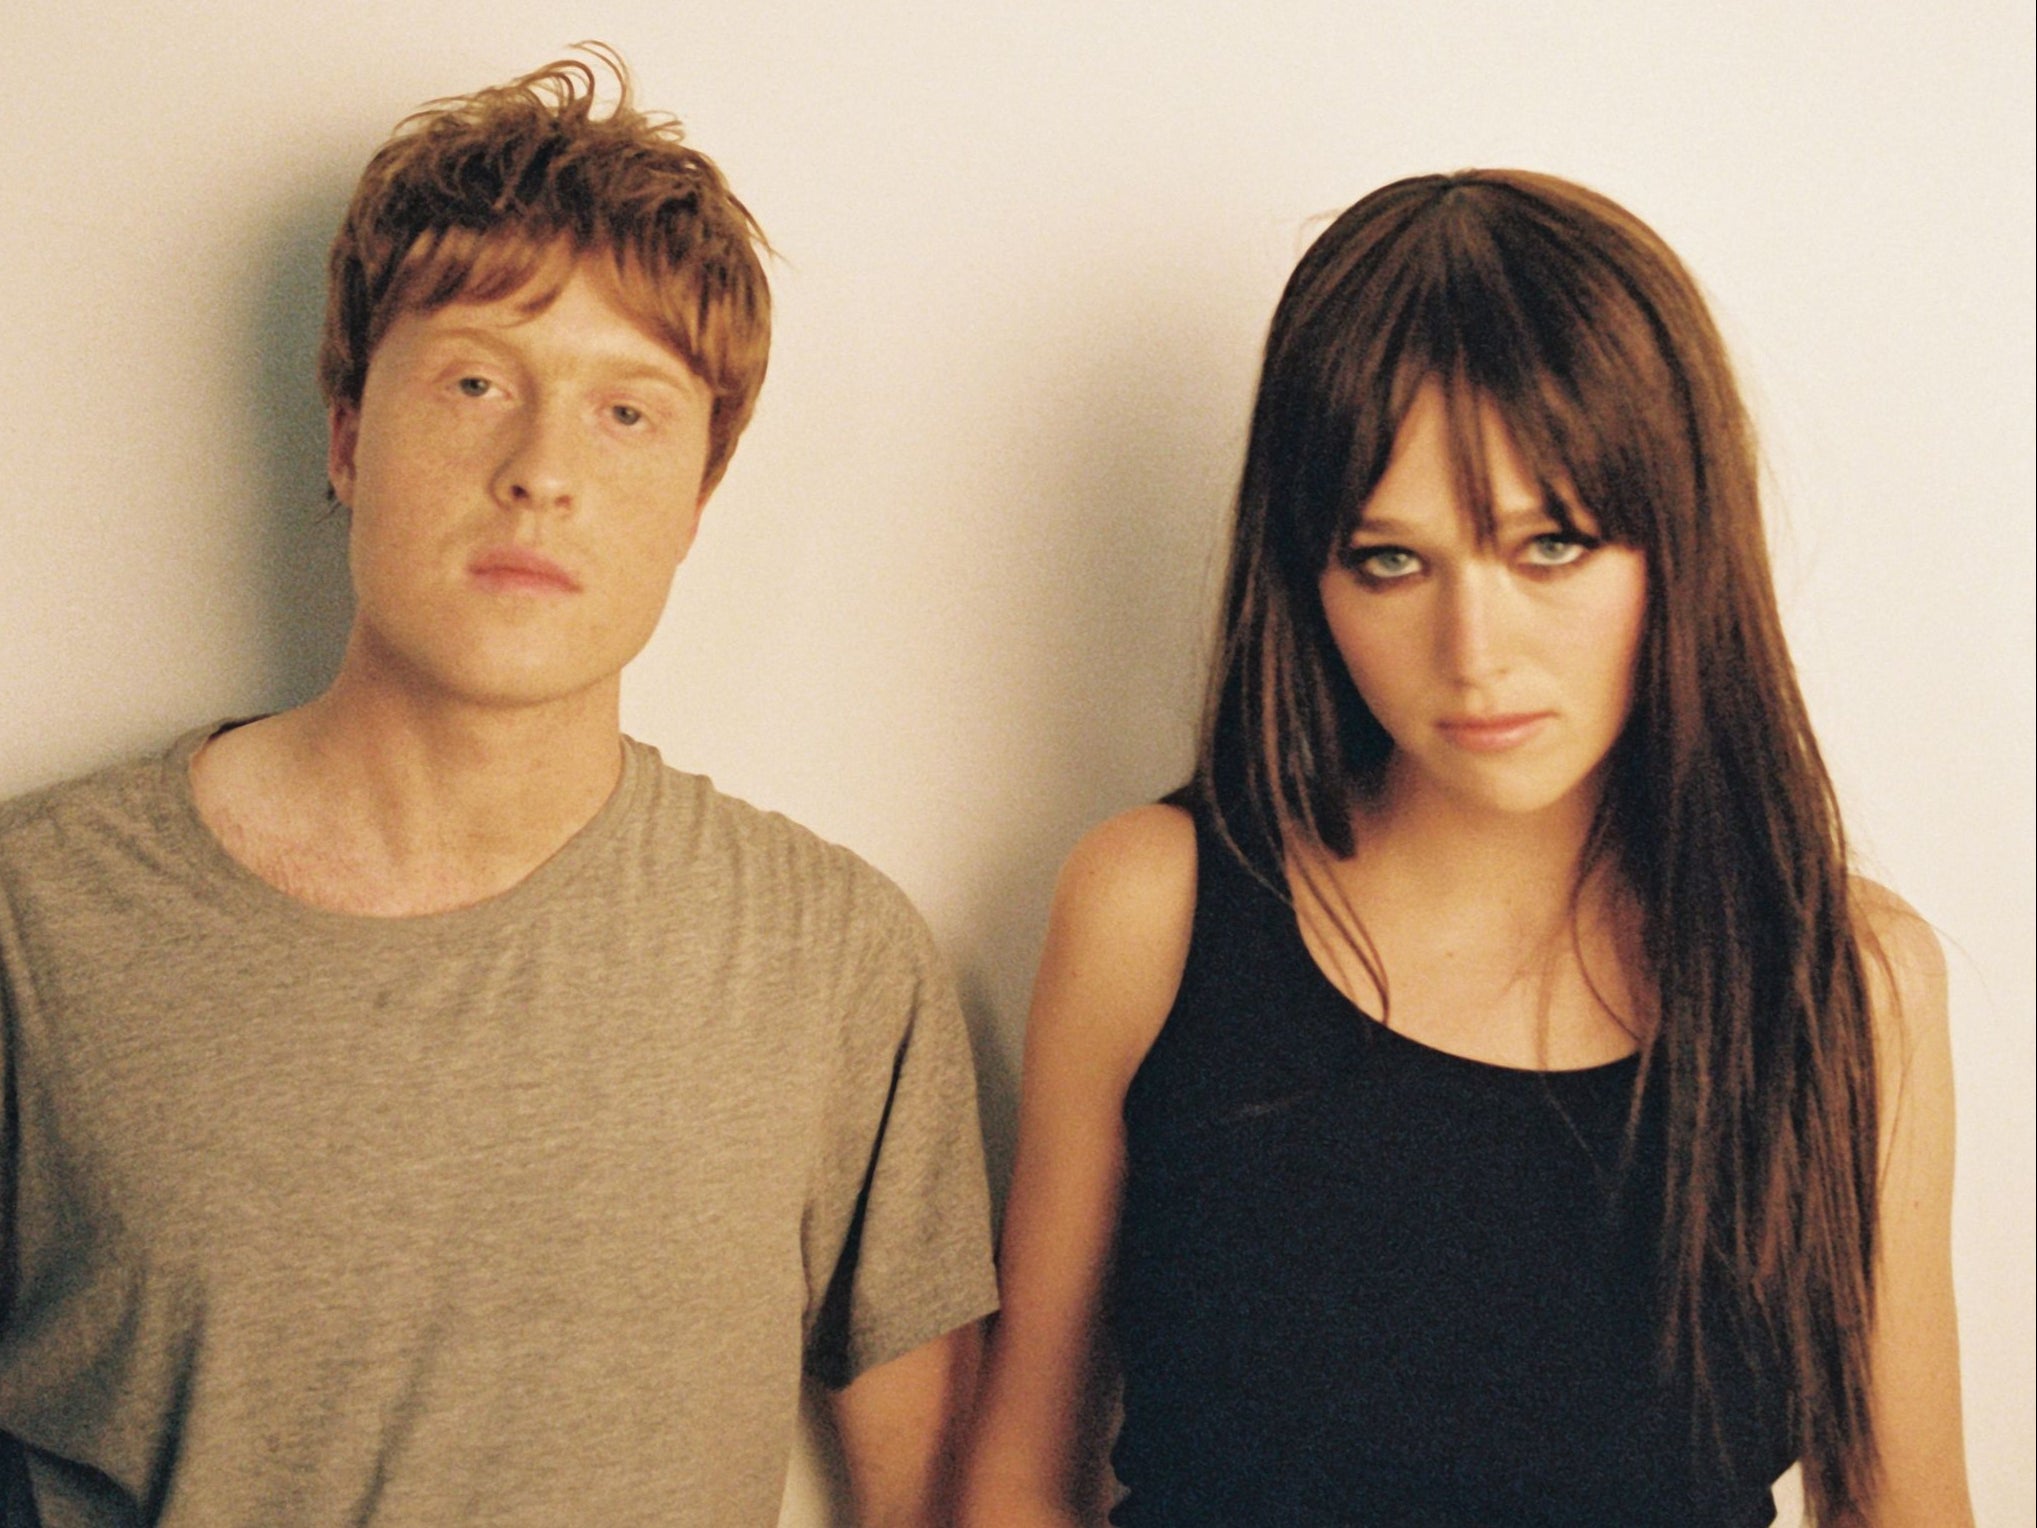 Taylor Skye and Georgia Ellery released their debut album as Jockstrap in 2022